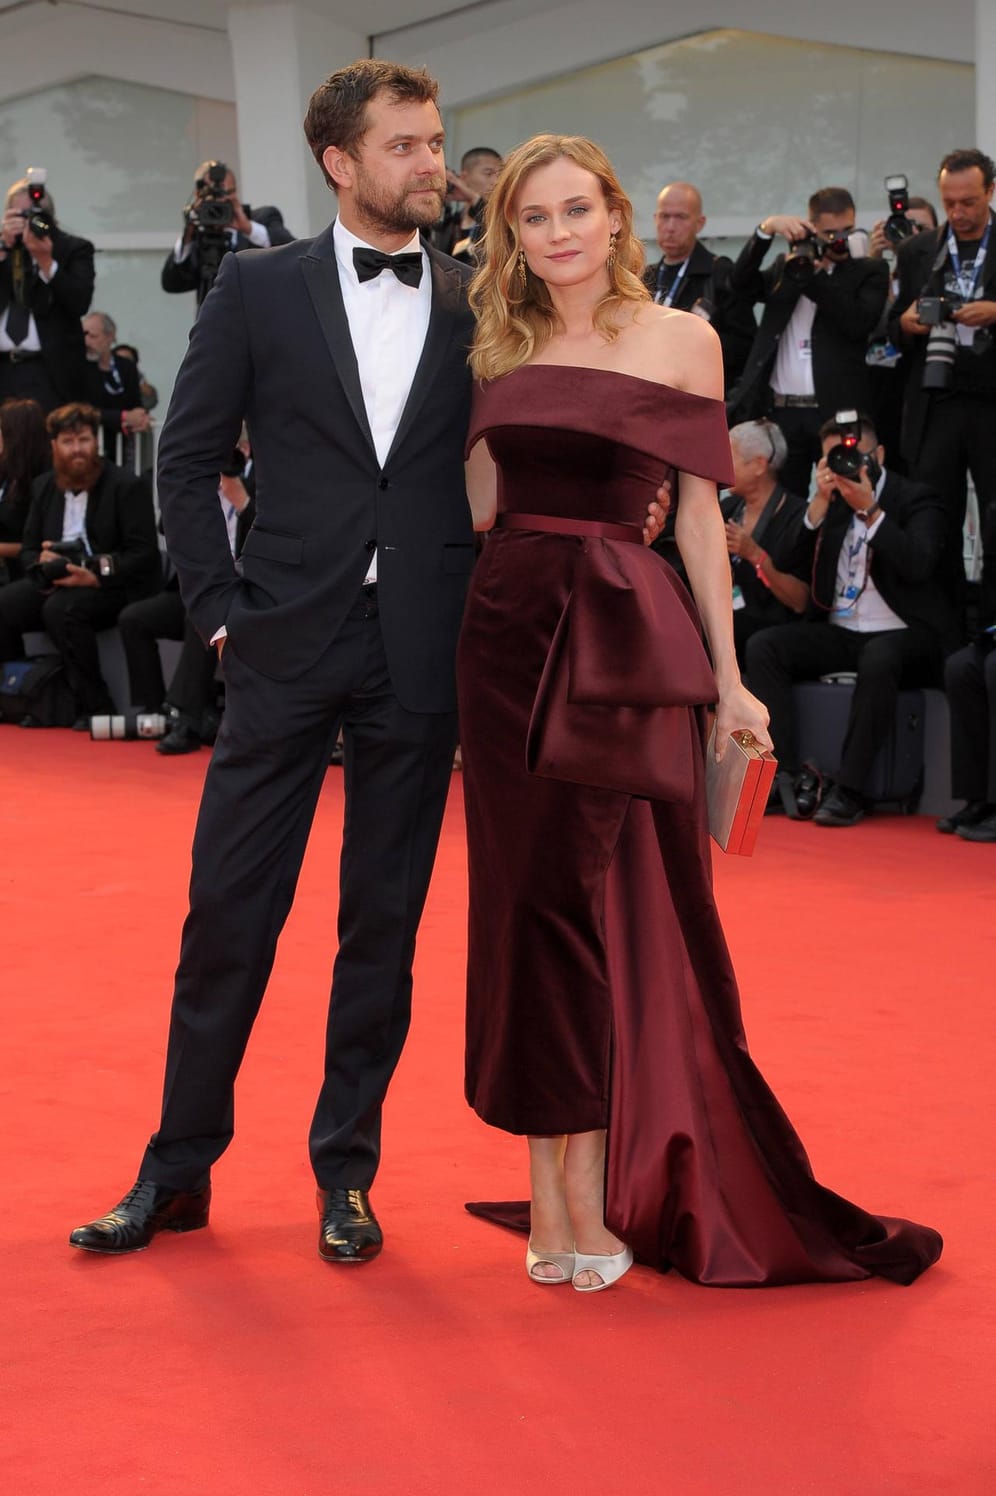 Zehn Jahre lang waren sie ein Paar, nun ist alles aus: Die Schauspielerkollegen Diane Kruger und Joshua Jackson haben sich getrennt. Das bestätigten Sprecher der beiden am 18. Juli gegenüber dem "People"-Magazin.